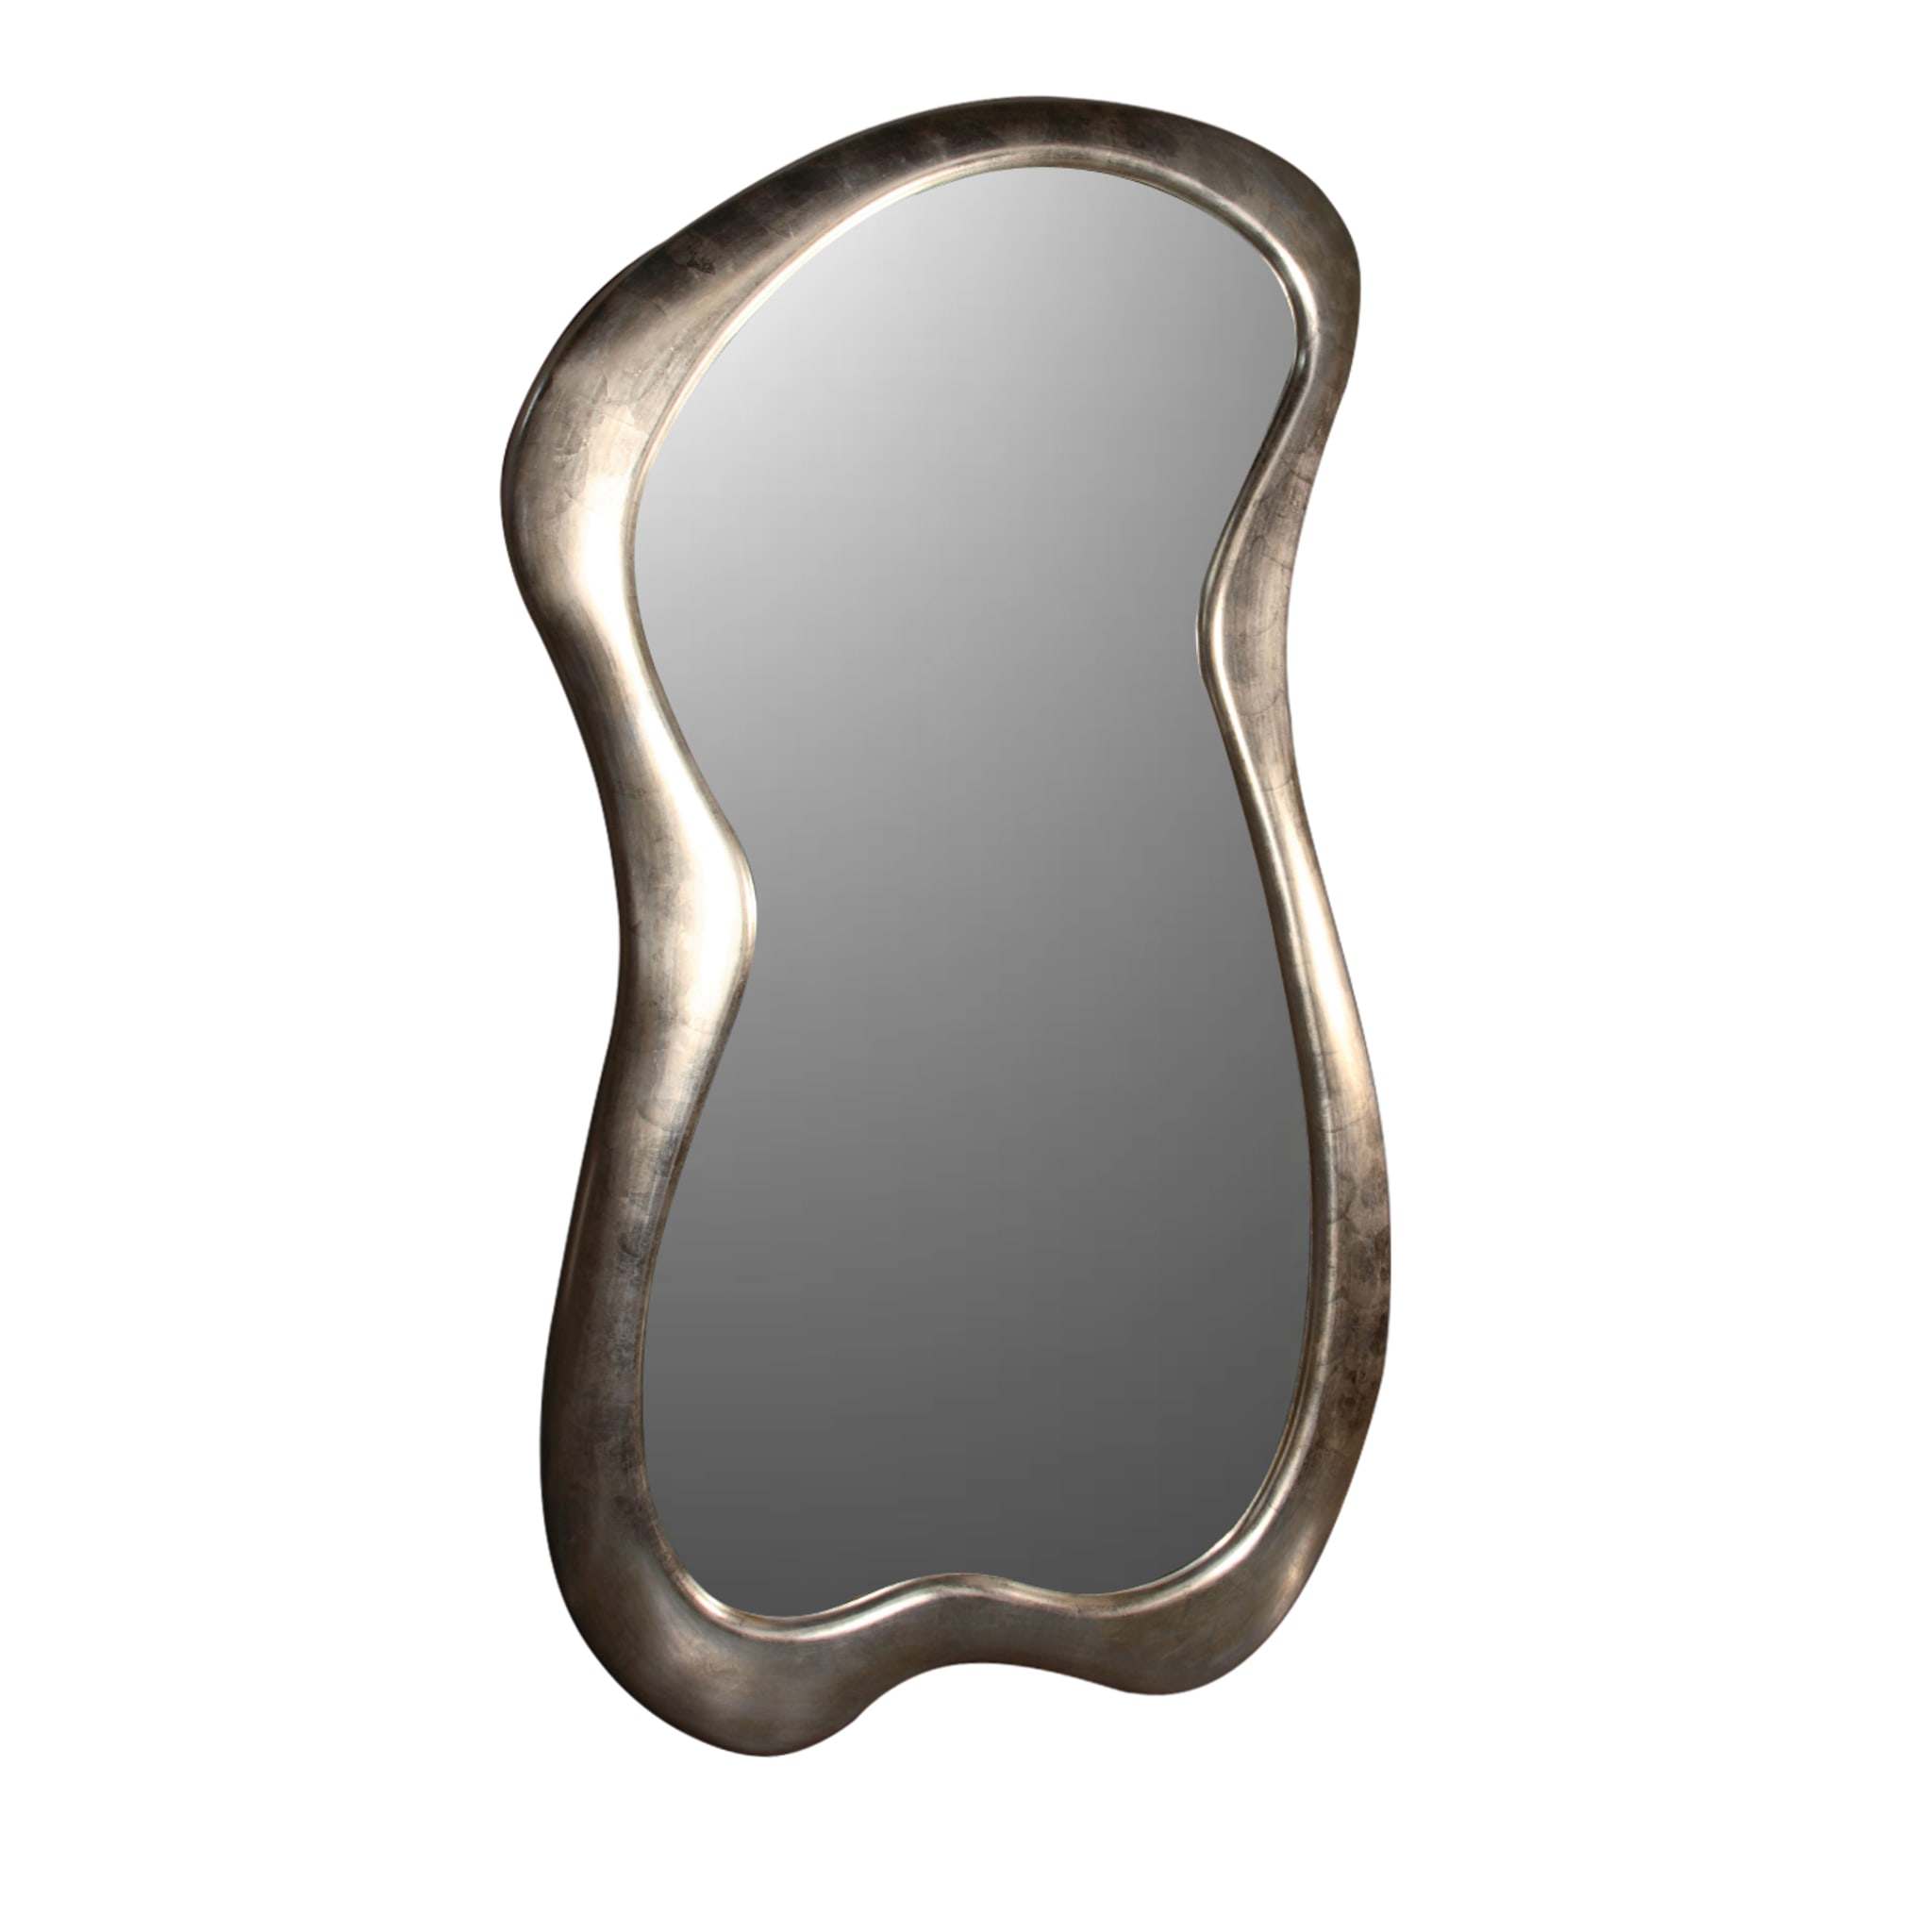 BI Grand miroir argenté de style avant-gardiste - Vue principale